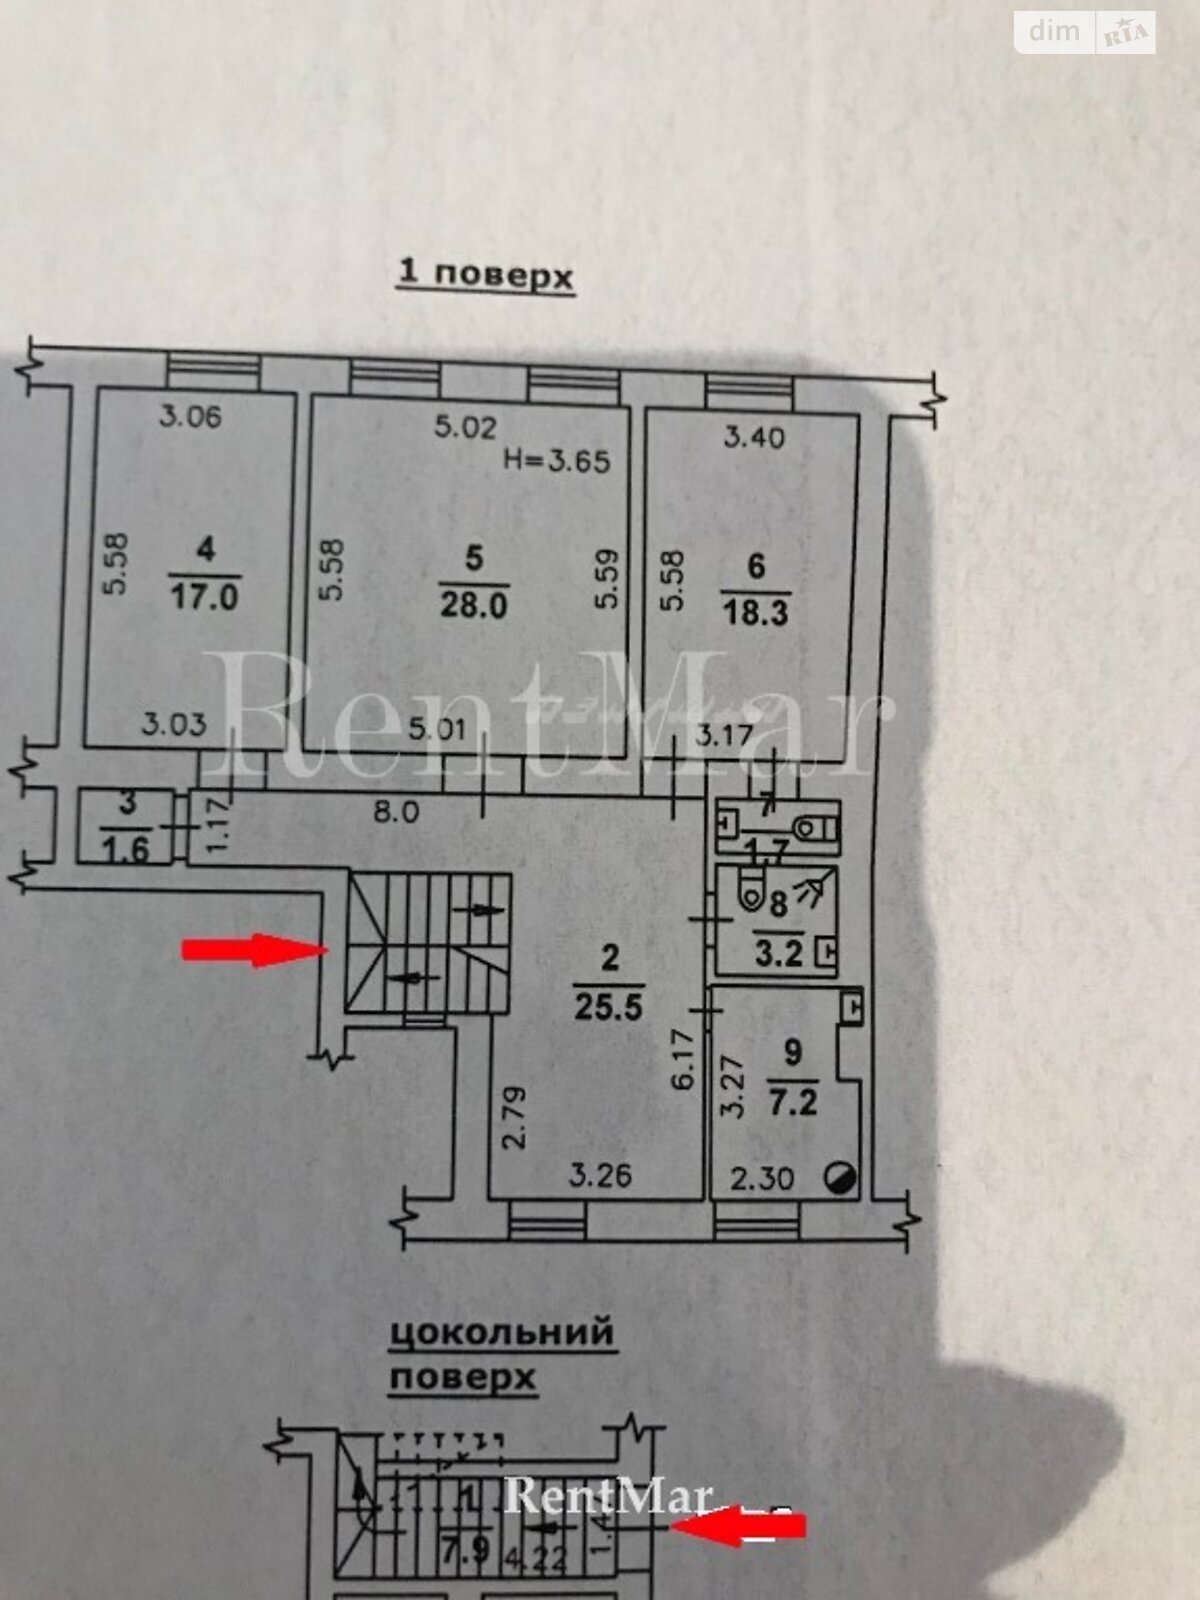 Аренда офисного помещения в Одессе, Сабанеев мост улица, помещений - 4, этаж - 2 фото 1